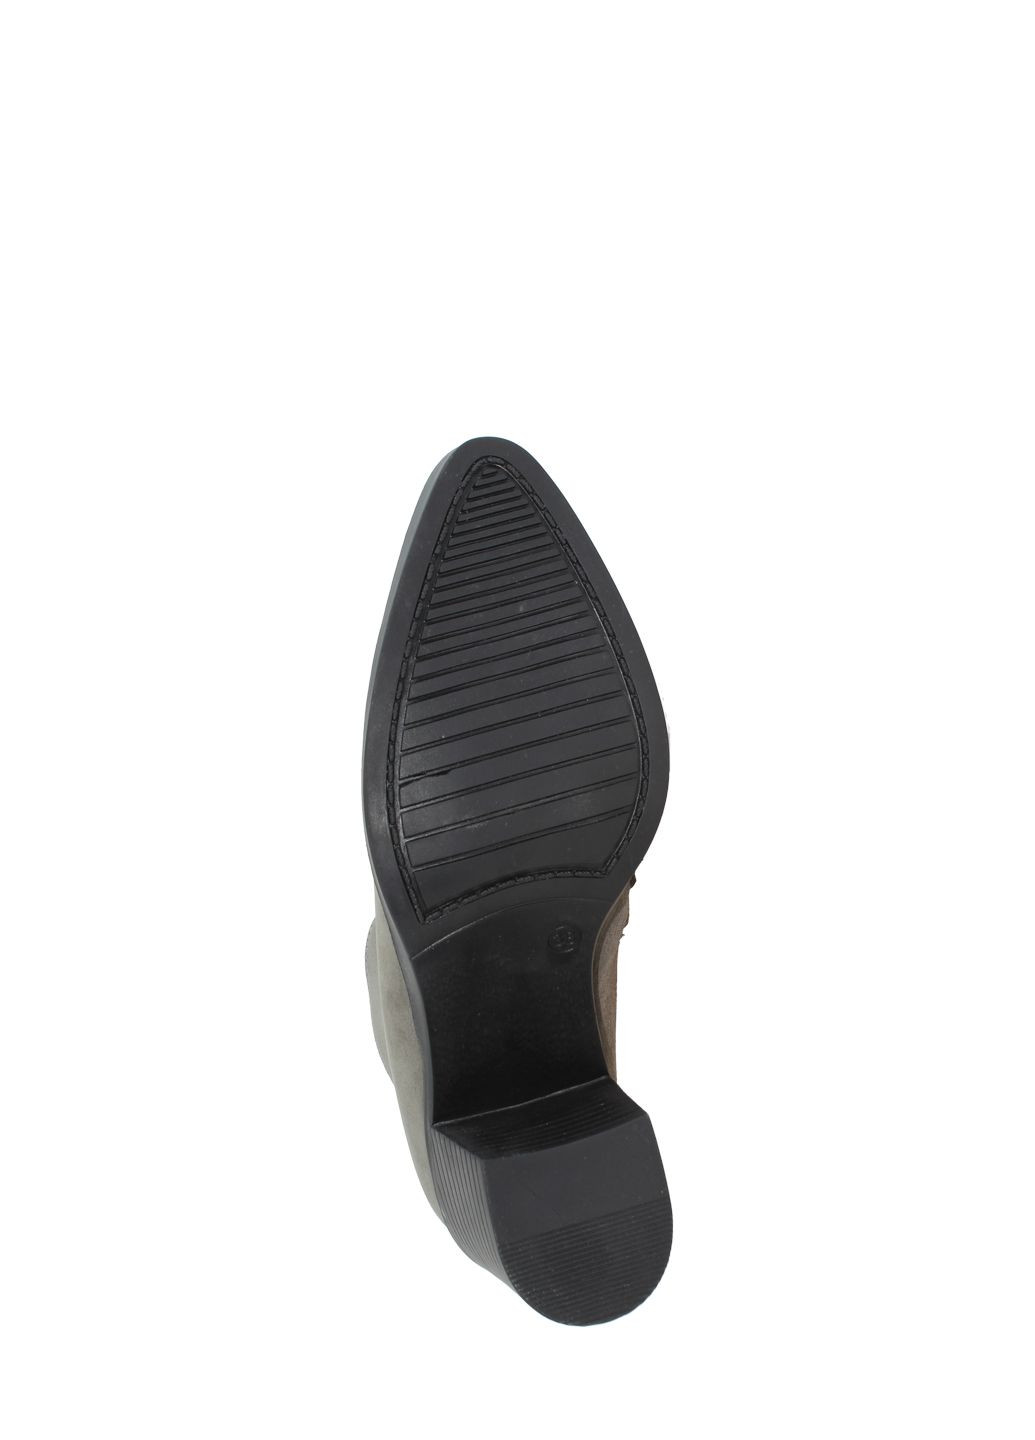 Осенние ботинки g06e20.58 серый Goover из натурального нубука